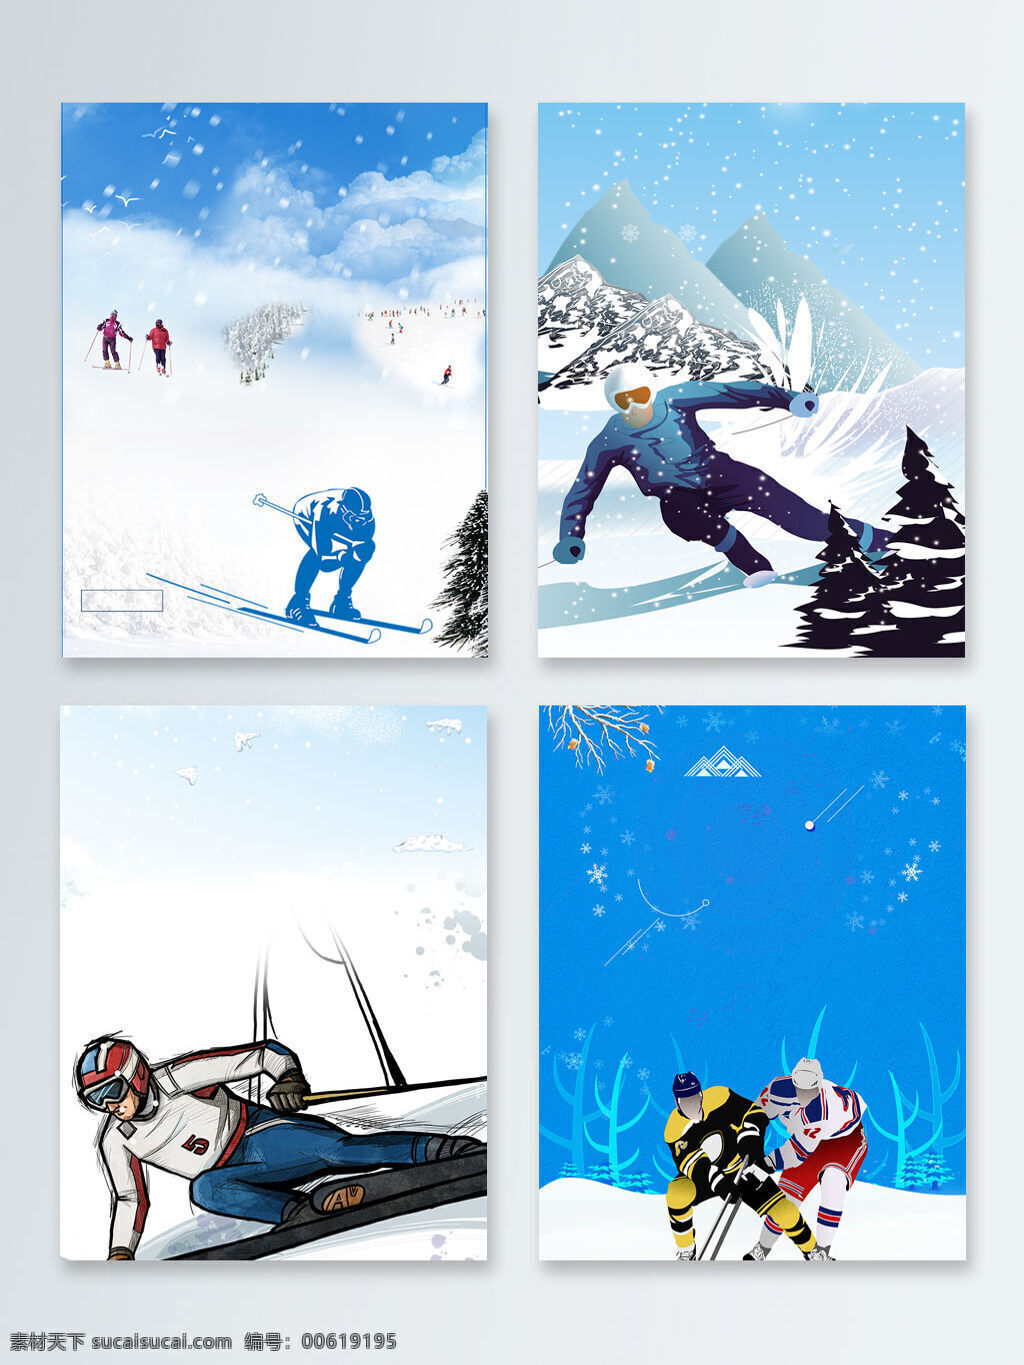 清新 冬季 滑雪 运动 广告 背景 冬天 唯美 雪地 雪景 冬日 滑雪运动 滑雪培训 滑雪活动 下雪 大雪 广告背景